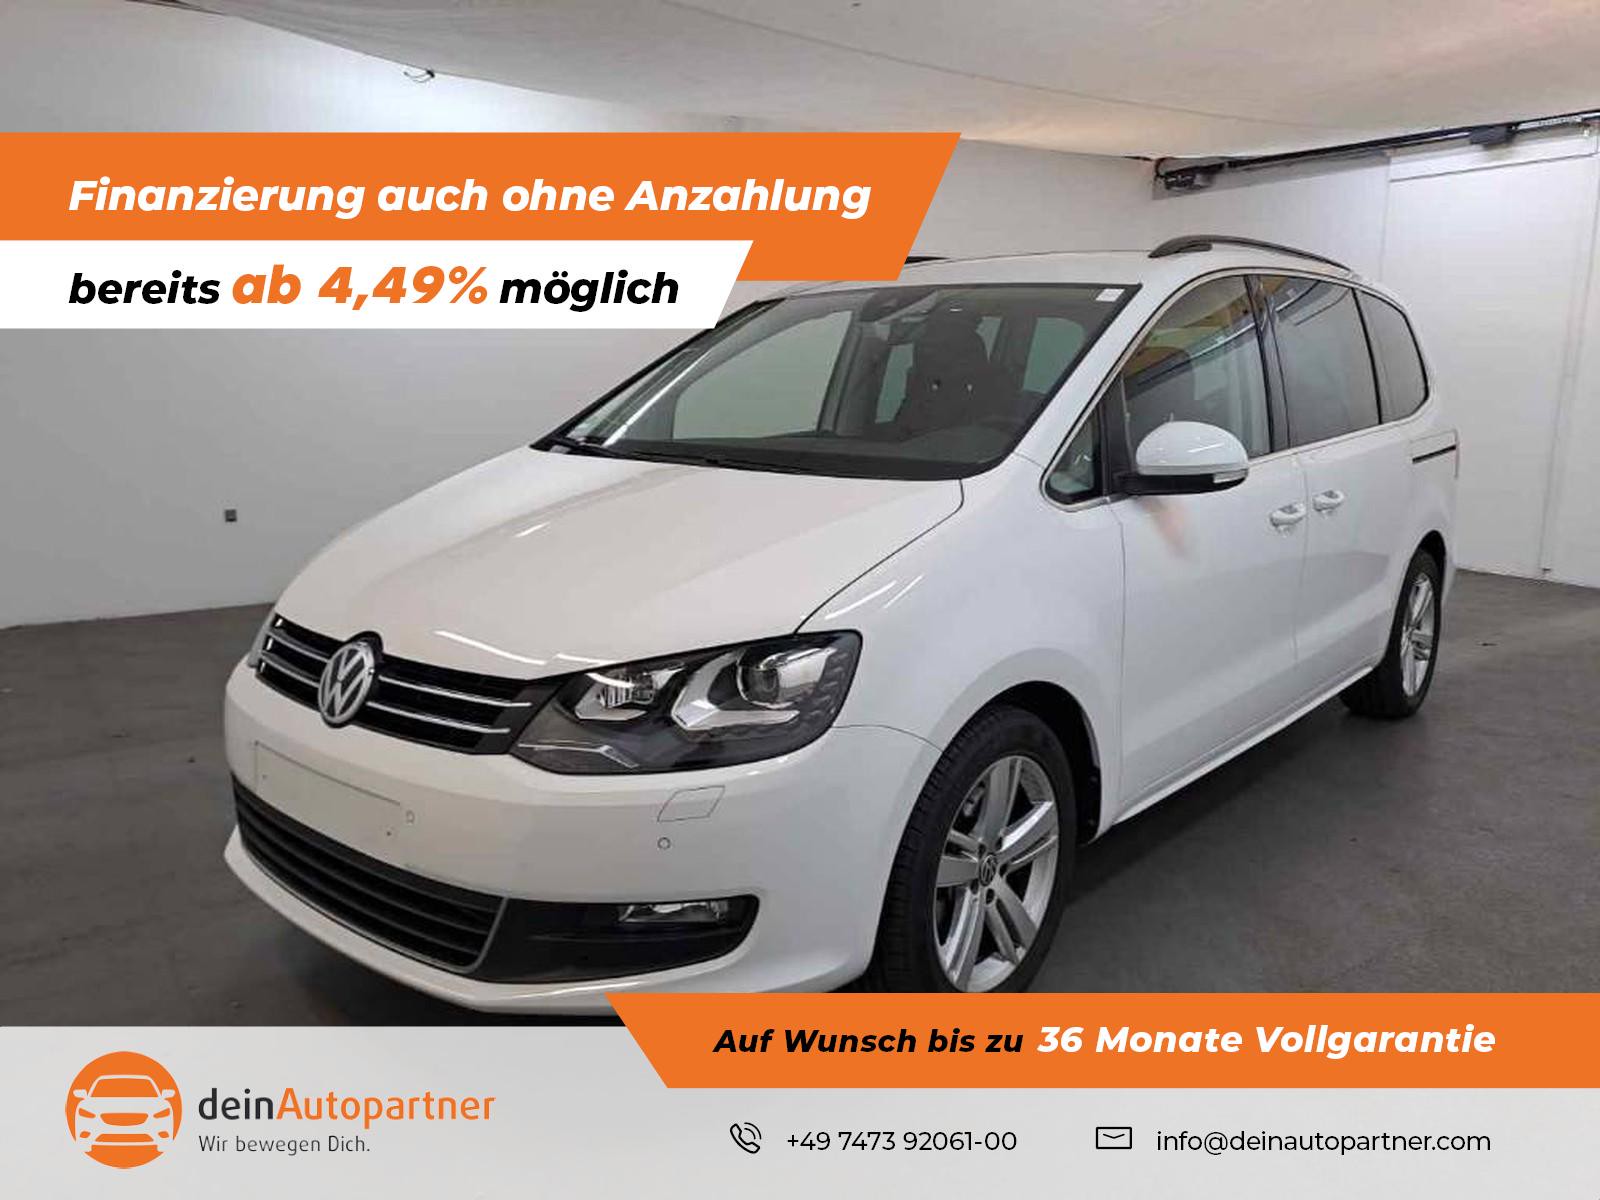 Volkswagen Sharan gebraucht kaufen in Mössingen Preis 33880 eur